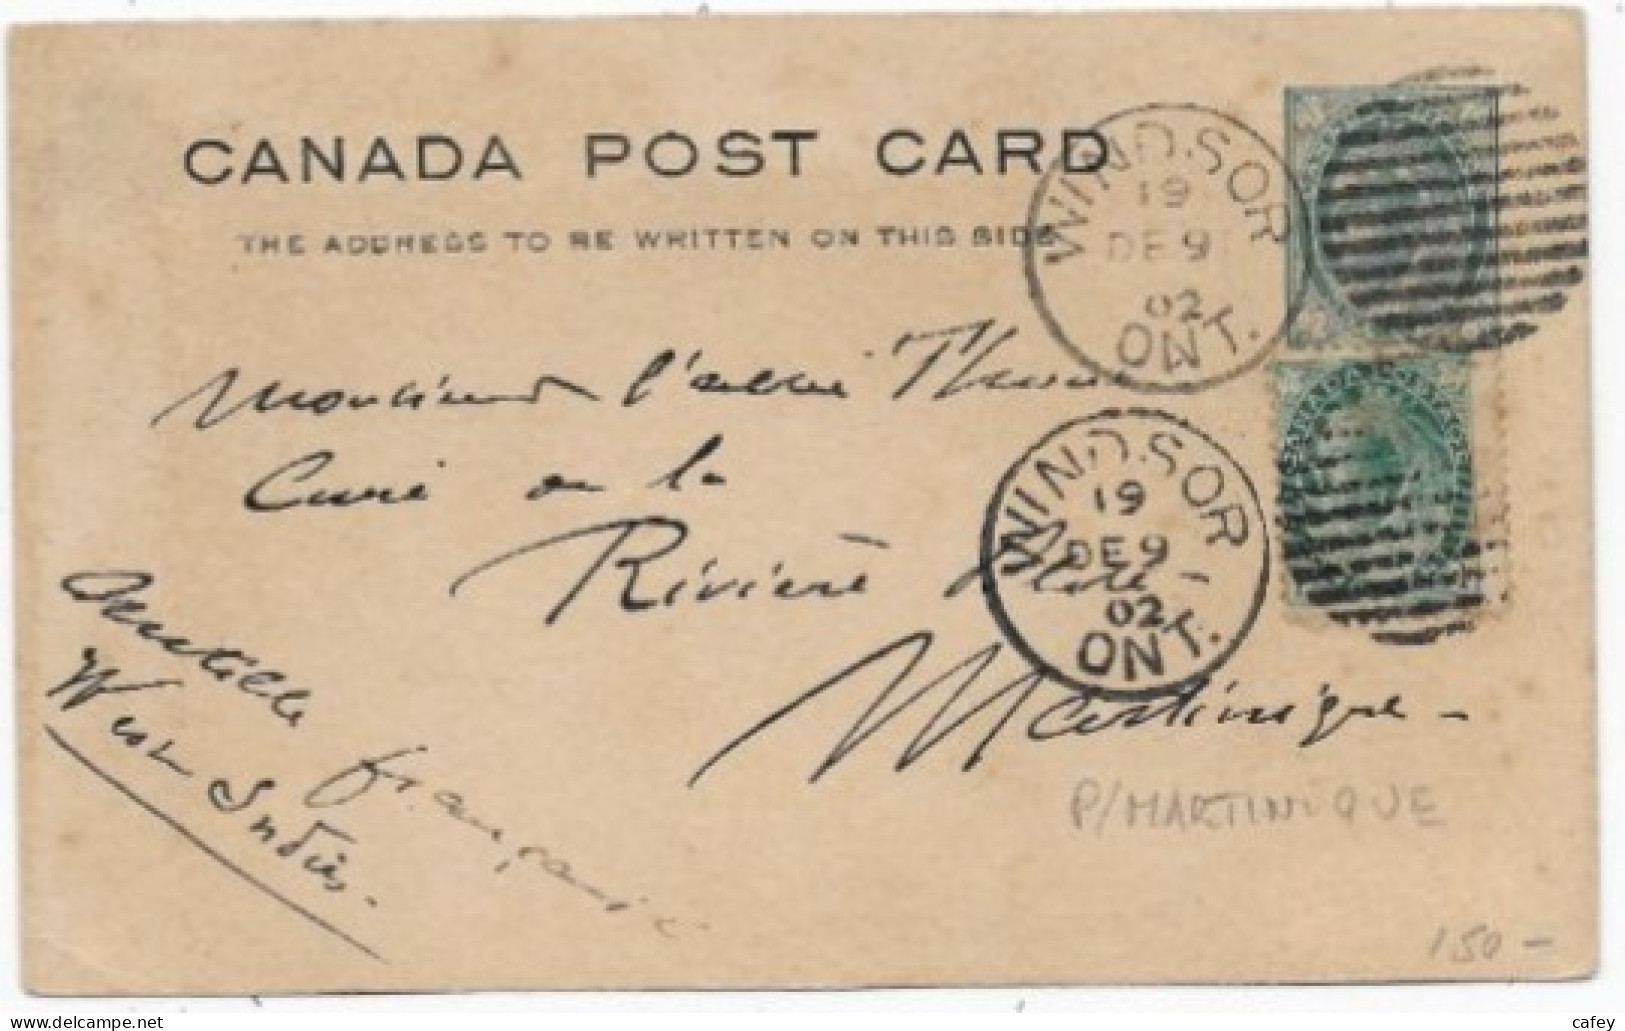 CANADA CP Entier Postal Càd WINDSOR 1902 P / MARTINIQUE Bonne Destination - Storia Postale